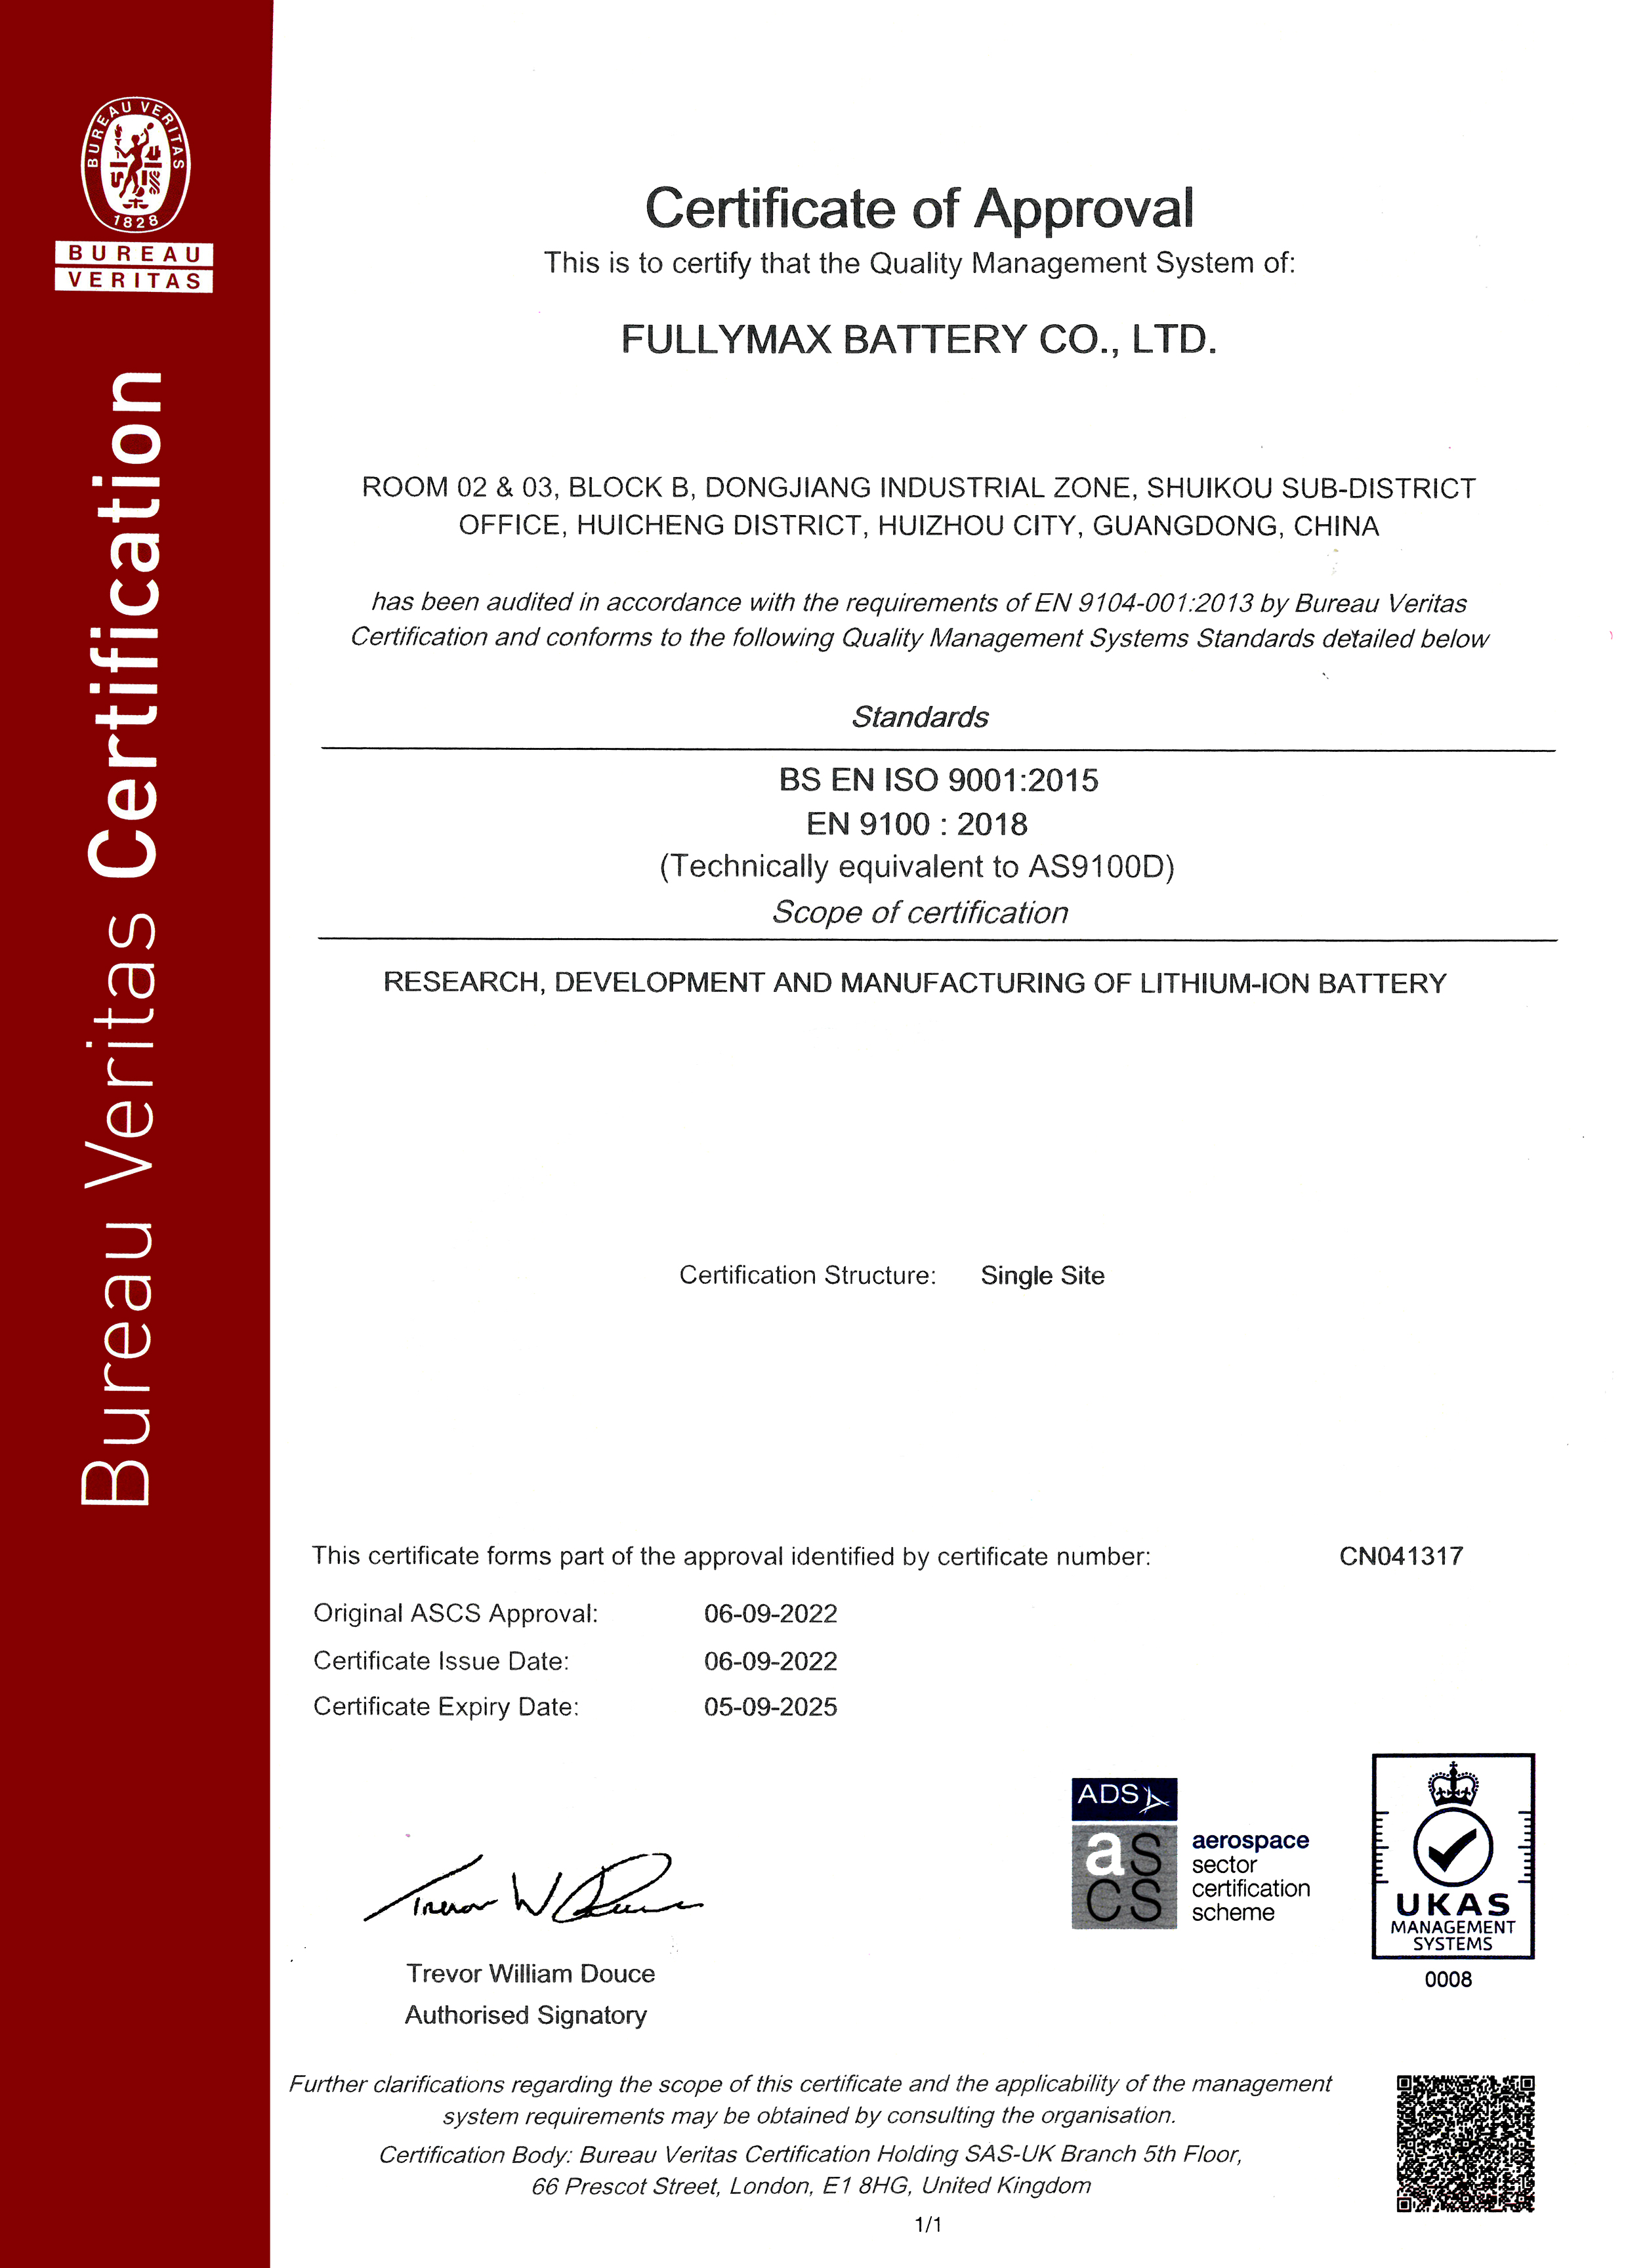 【喜报】热烈祝贺新澳门葡京网络游戏顺利获取了AS9100D:2016航空质量管理体系证书